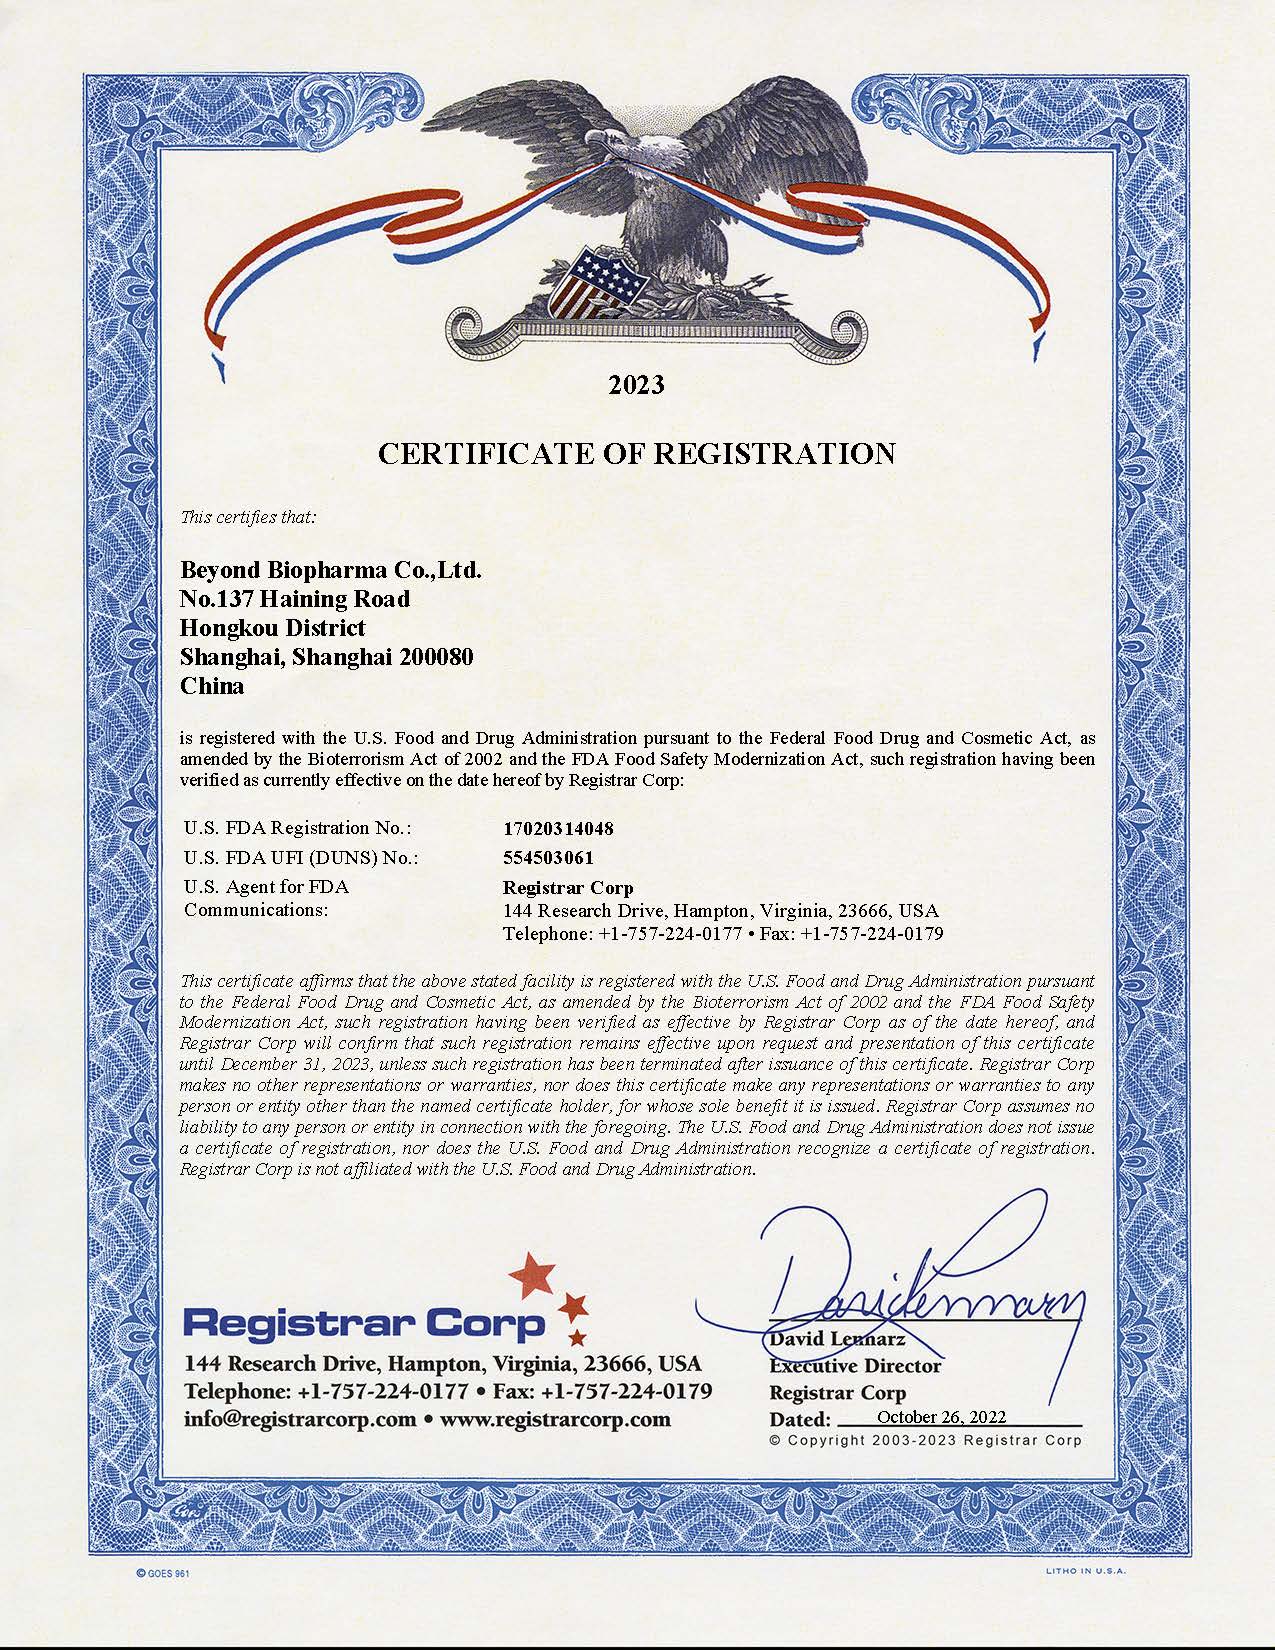 Boas notícias!Beyond Biopharma Co., Ltd. Atualize com sucesso o certificado de registro 2023 do FDA dos EUA!